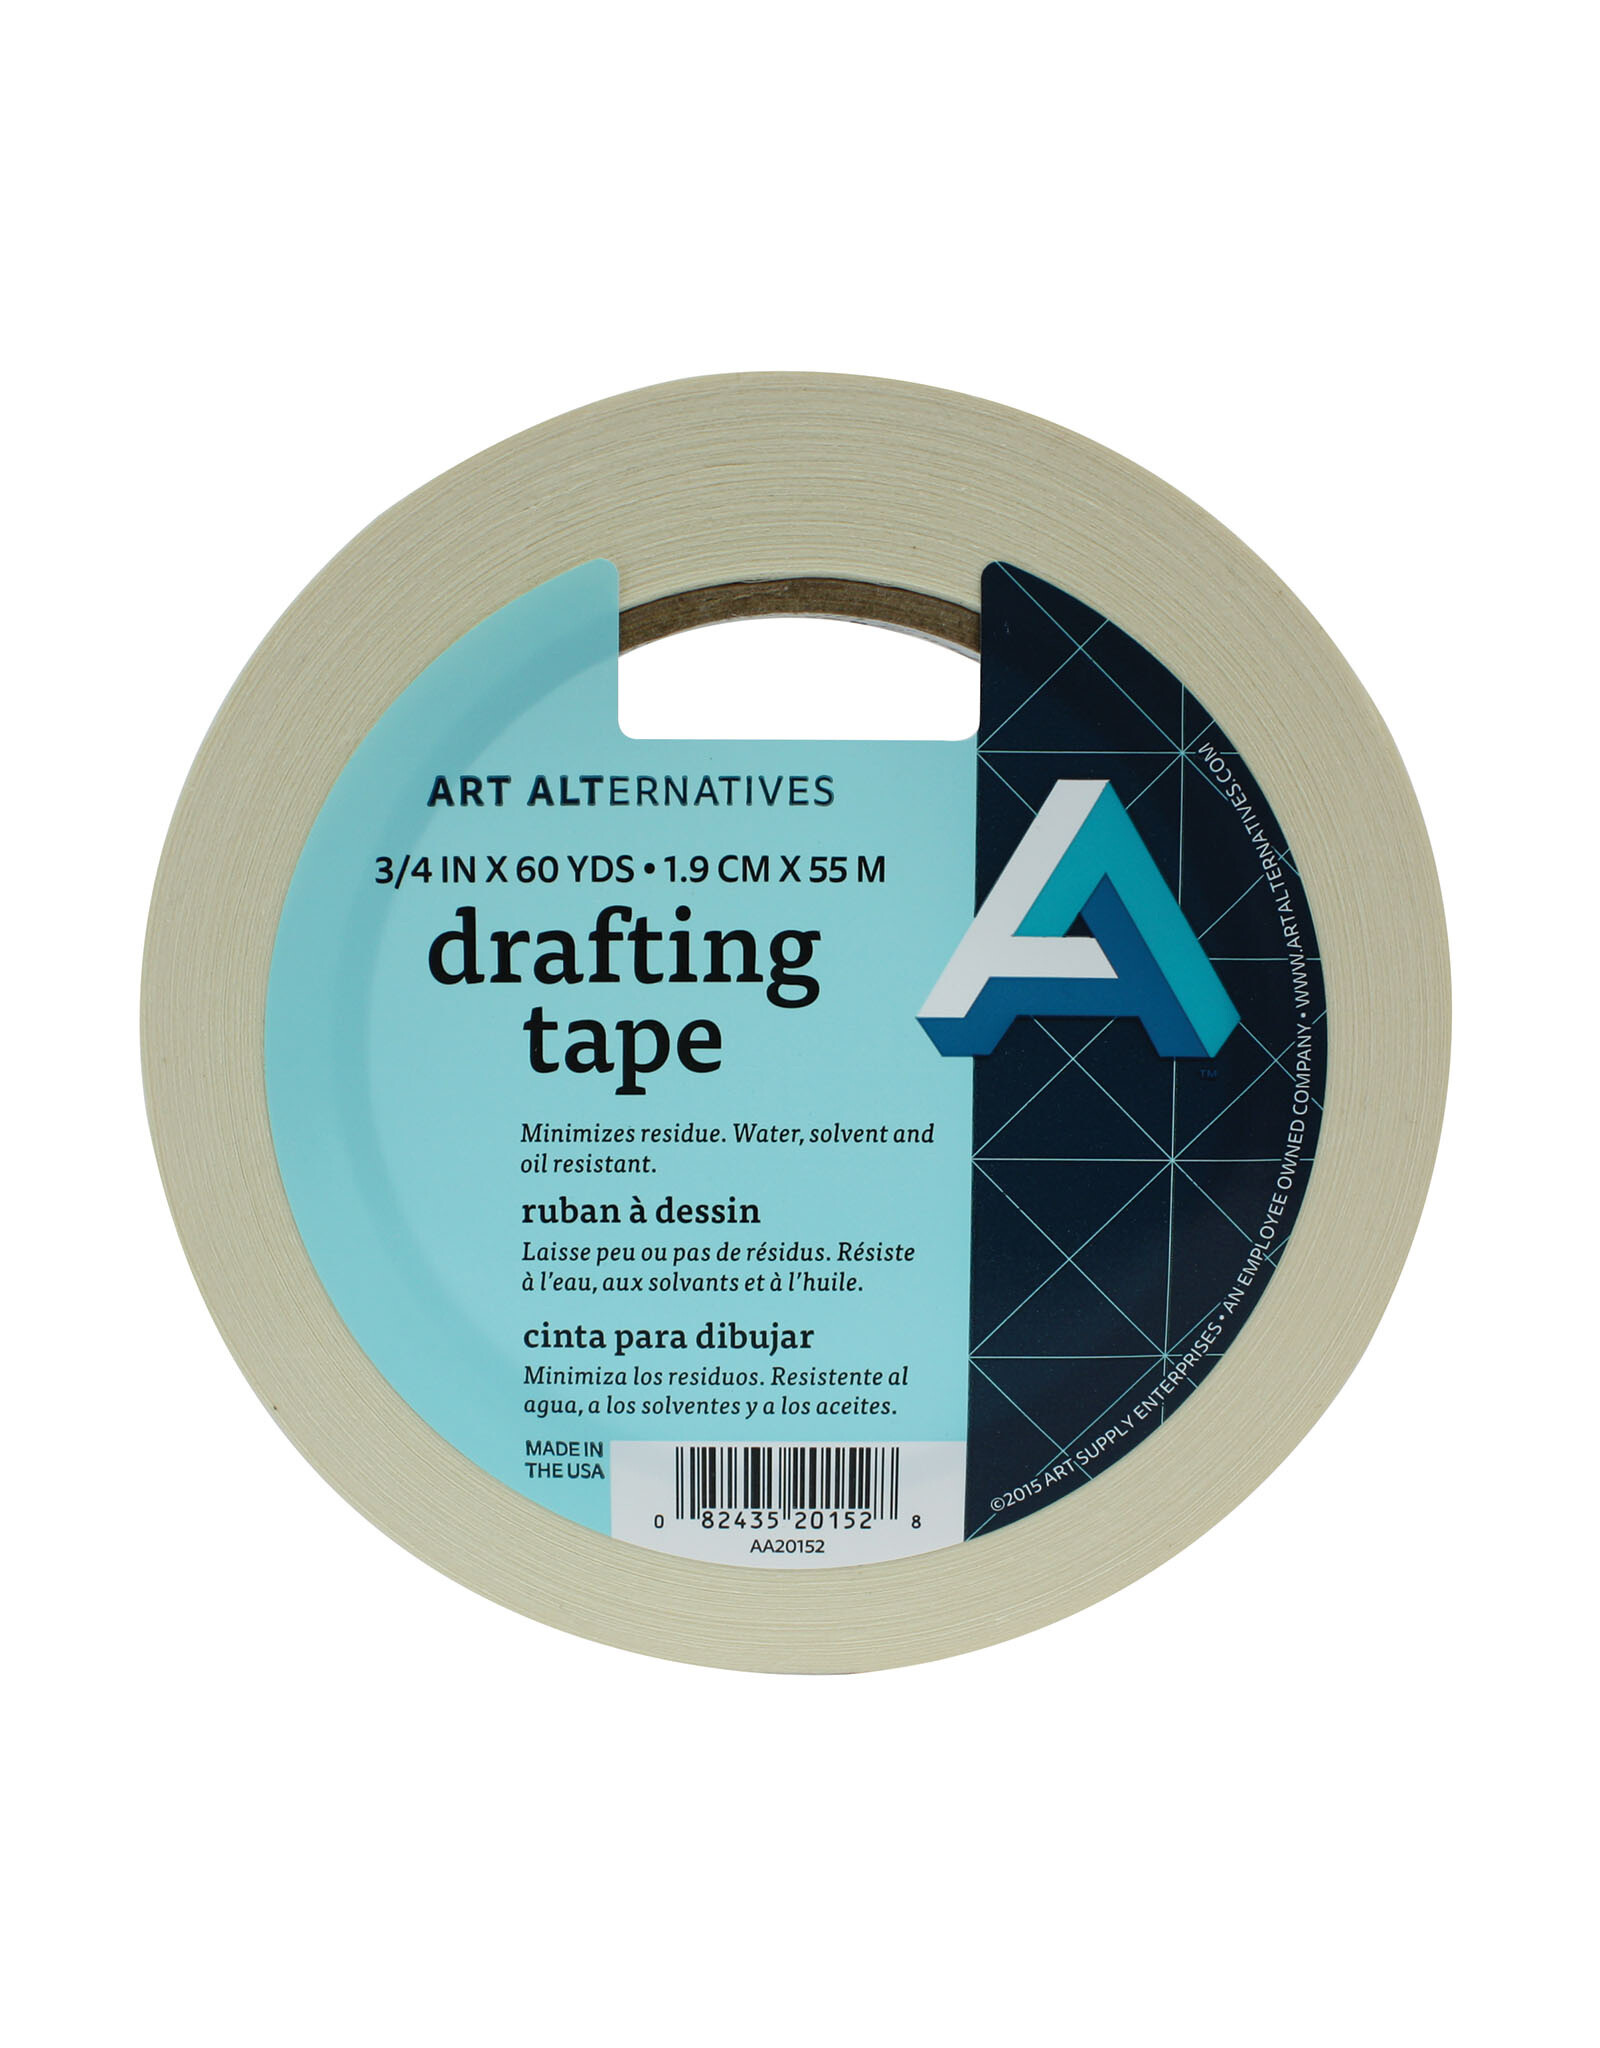 Art Alternatives Art Alternatives Drafting Tape ¾'' x 10yds